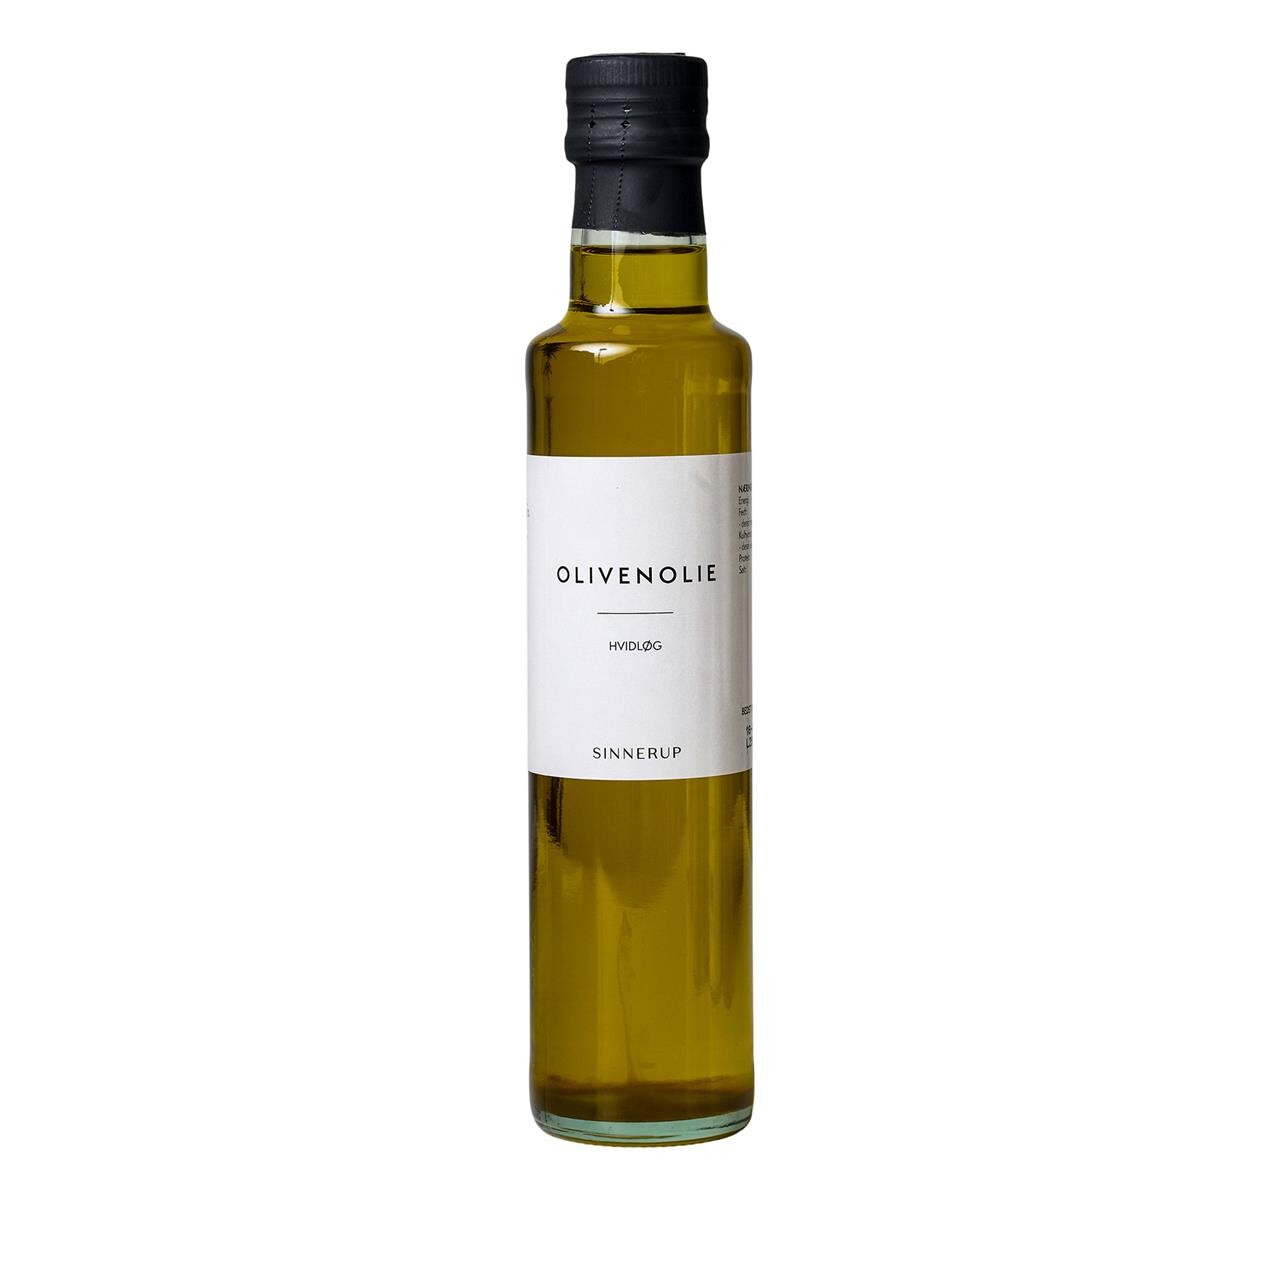 SINNERUP Olivenolie med hvidløg (TRANSPARENT ONESIZE)